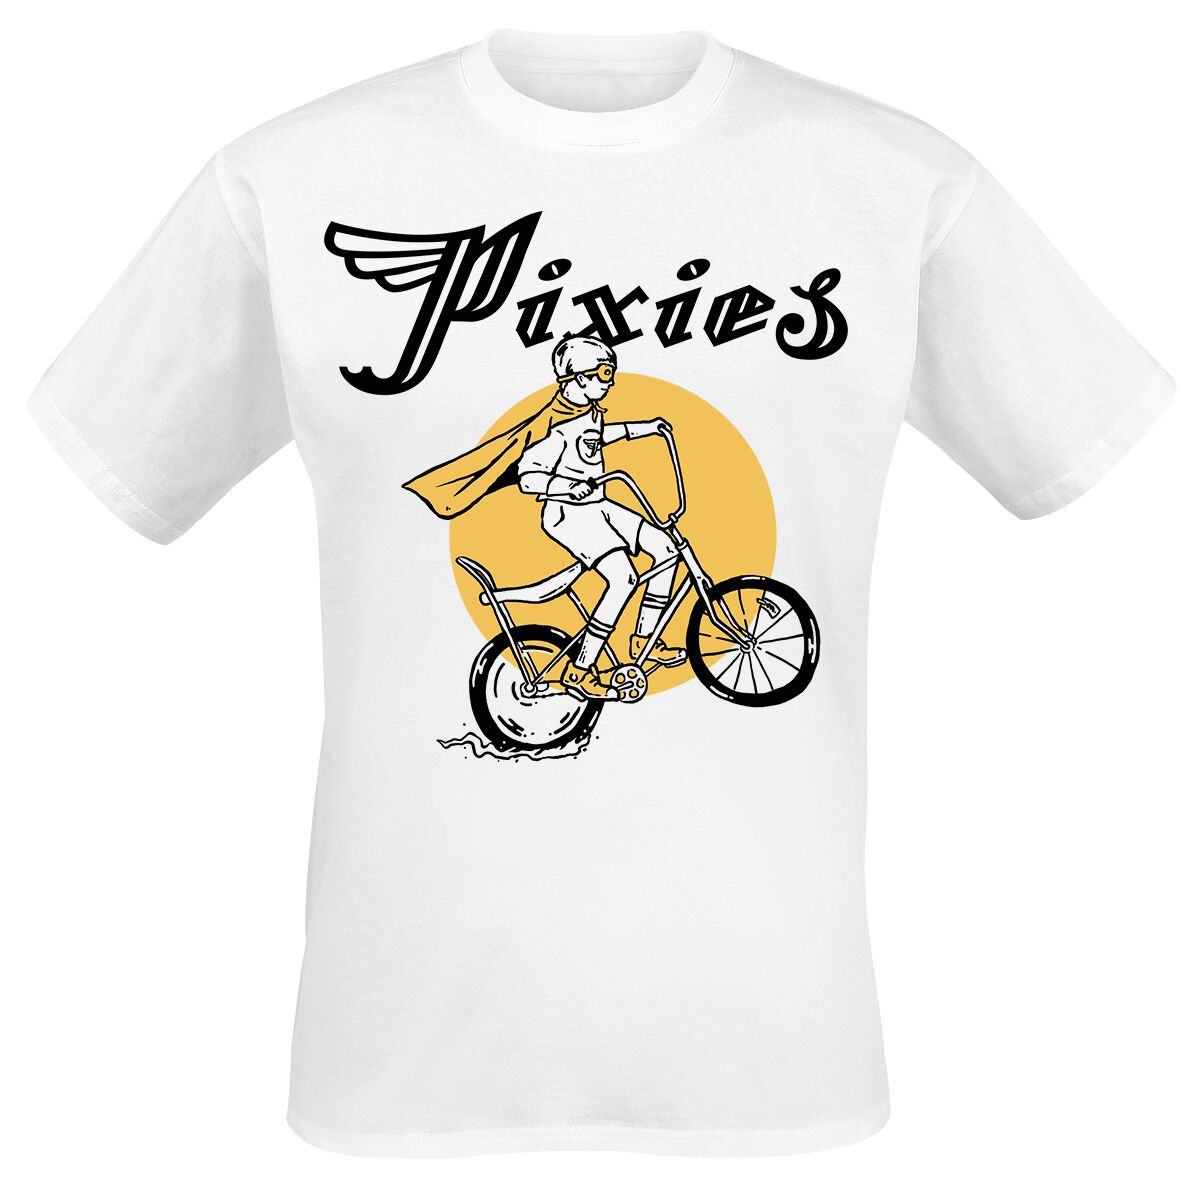 Pixies Tony T-Shirt white